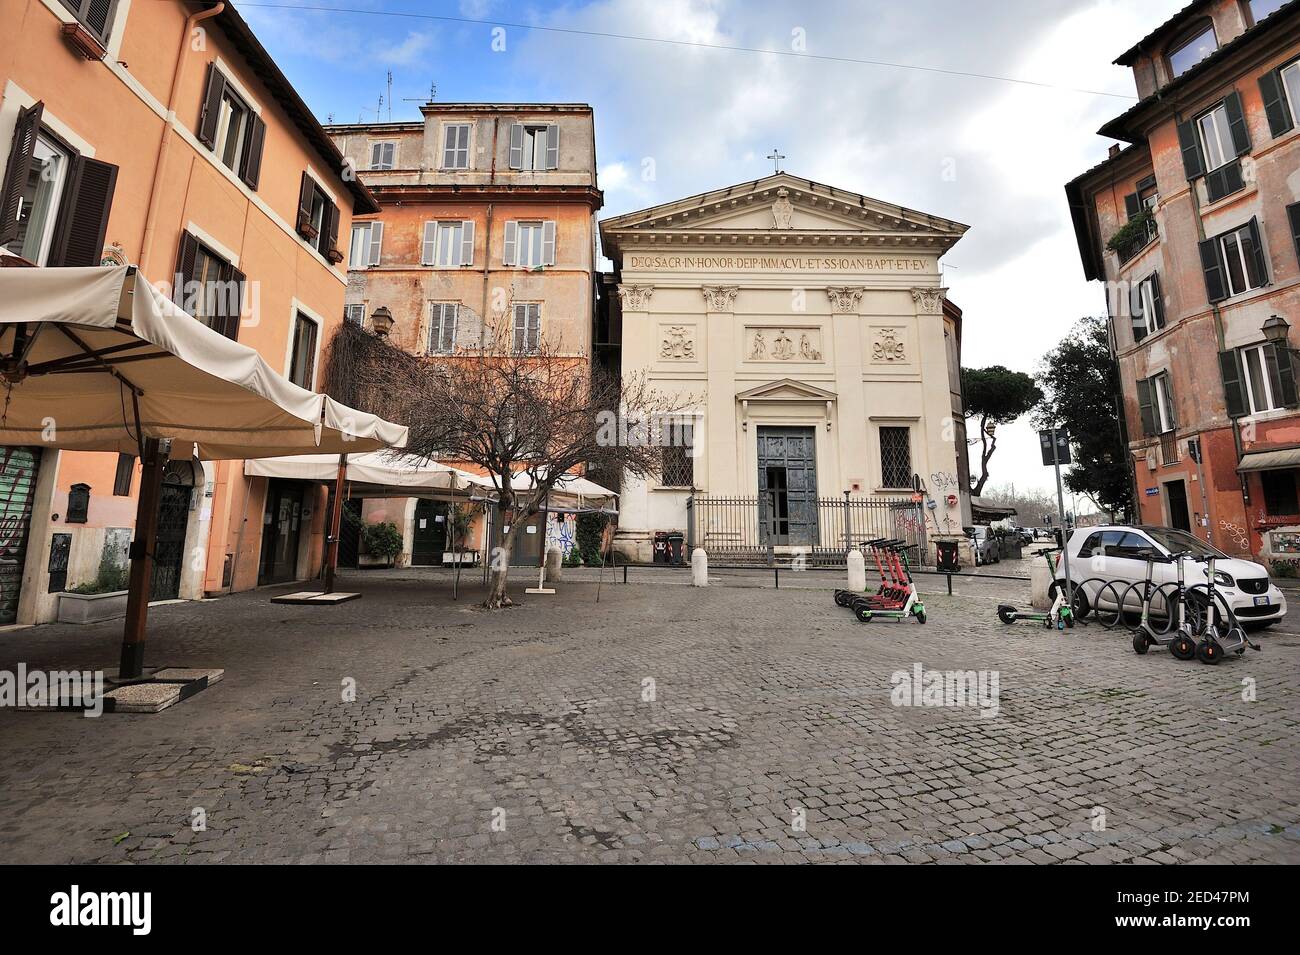 Piazza di San Giovanni della Malva, Trastevere, Rome, Italy Stock Photo